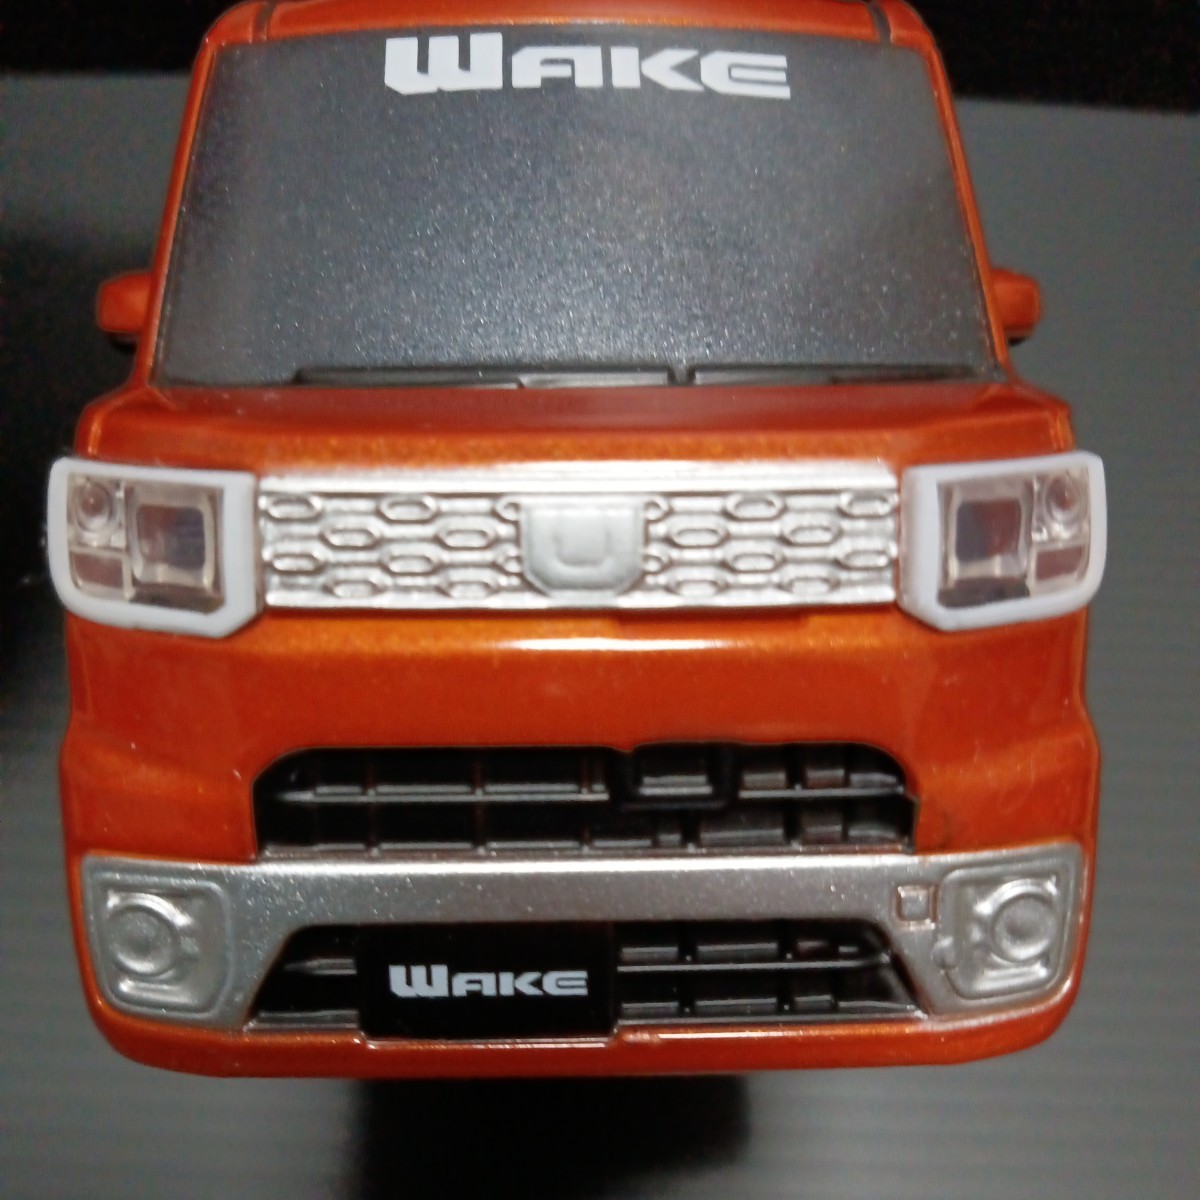 ● プルバックカー「DAIHATSU ウェイク」WAKE オレンジ系 ミニカー プルバック